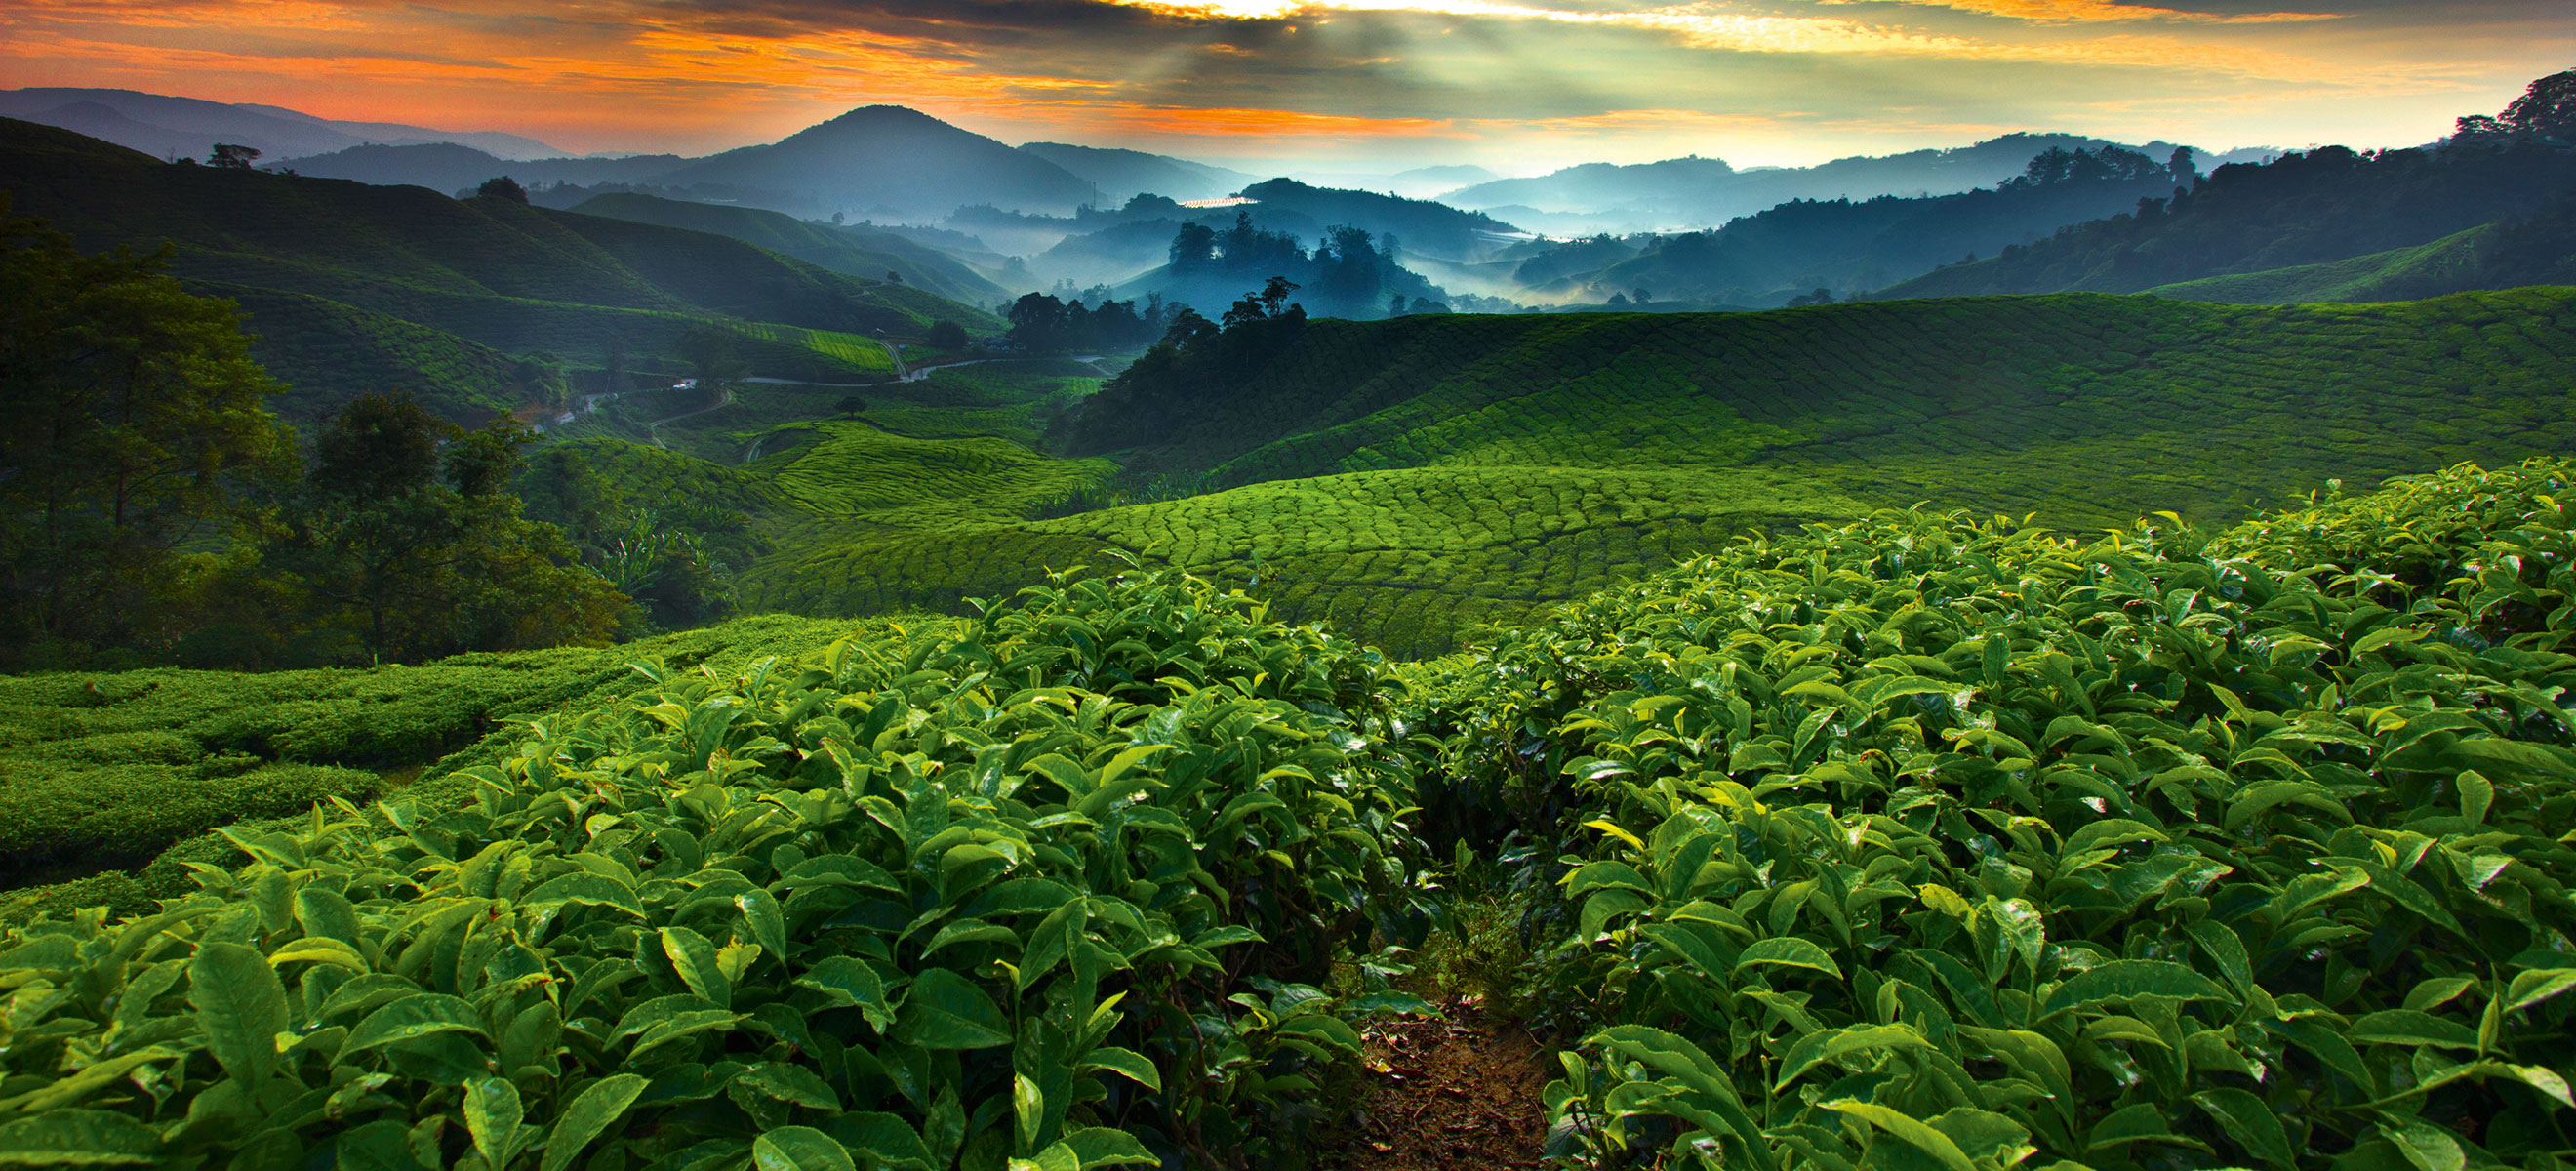 Im Hochland von Costa Rica wachsen Kaffeesträucher, deren Bohnen später zu exquisiten Kaffees veredelt werden. 